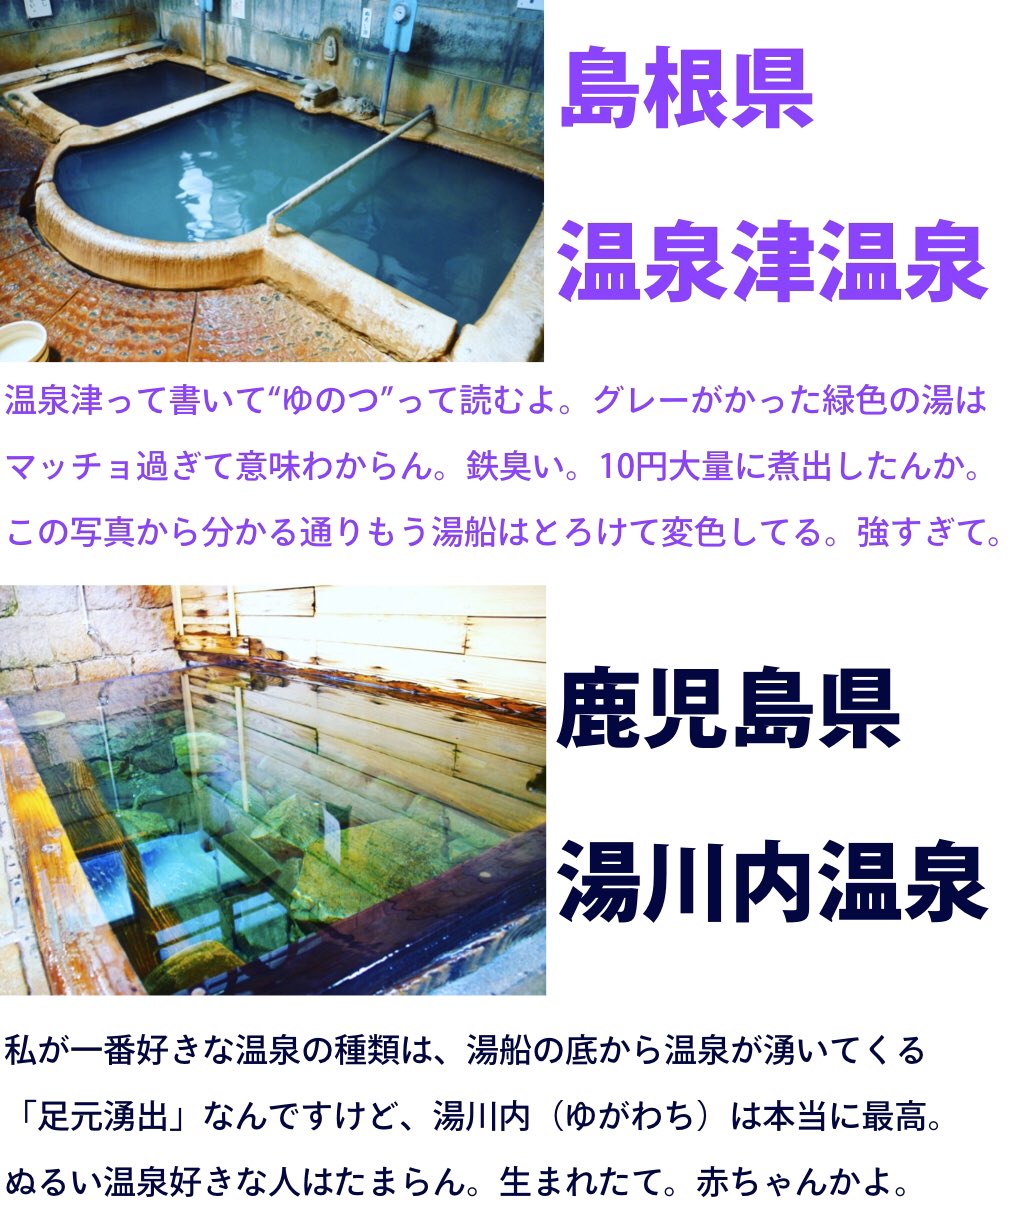 11月26日は「いい風呂の日」!温泉オタクが激推しするいい風呂!